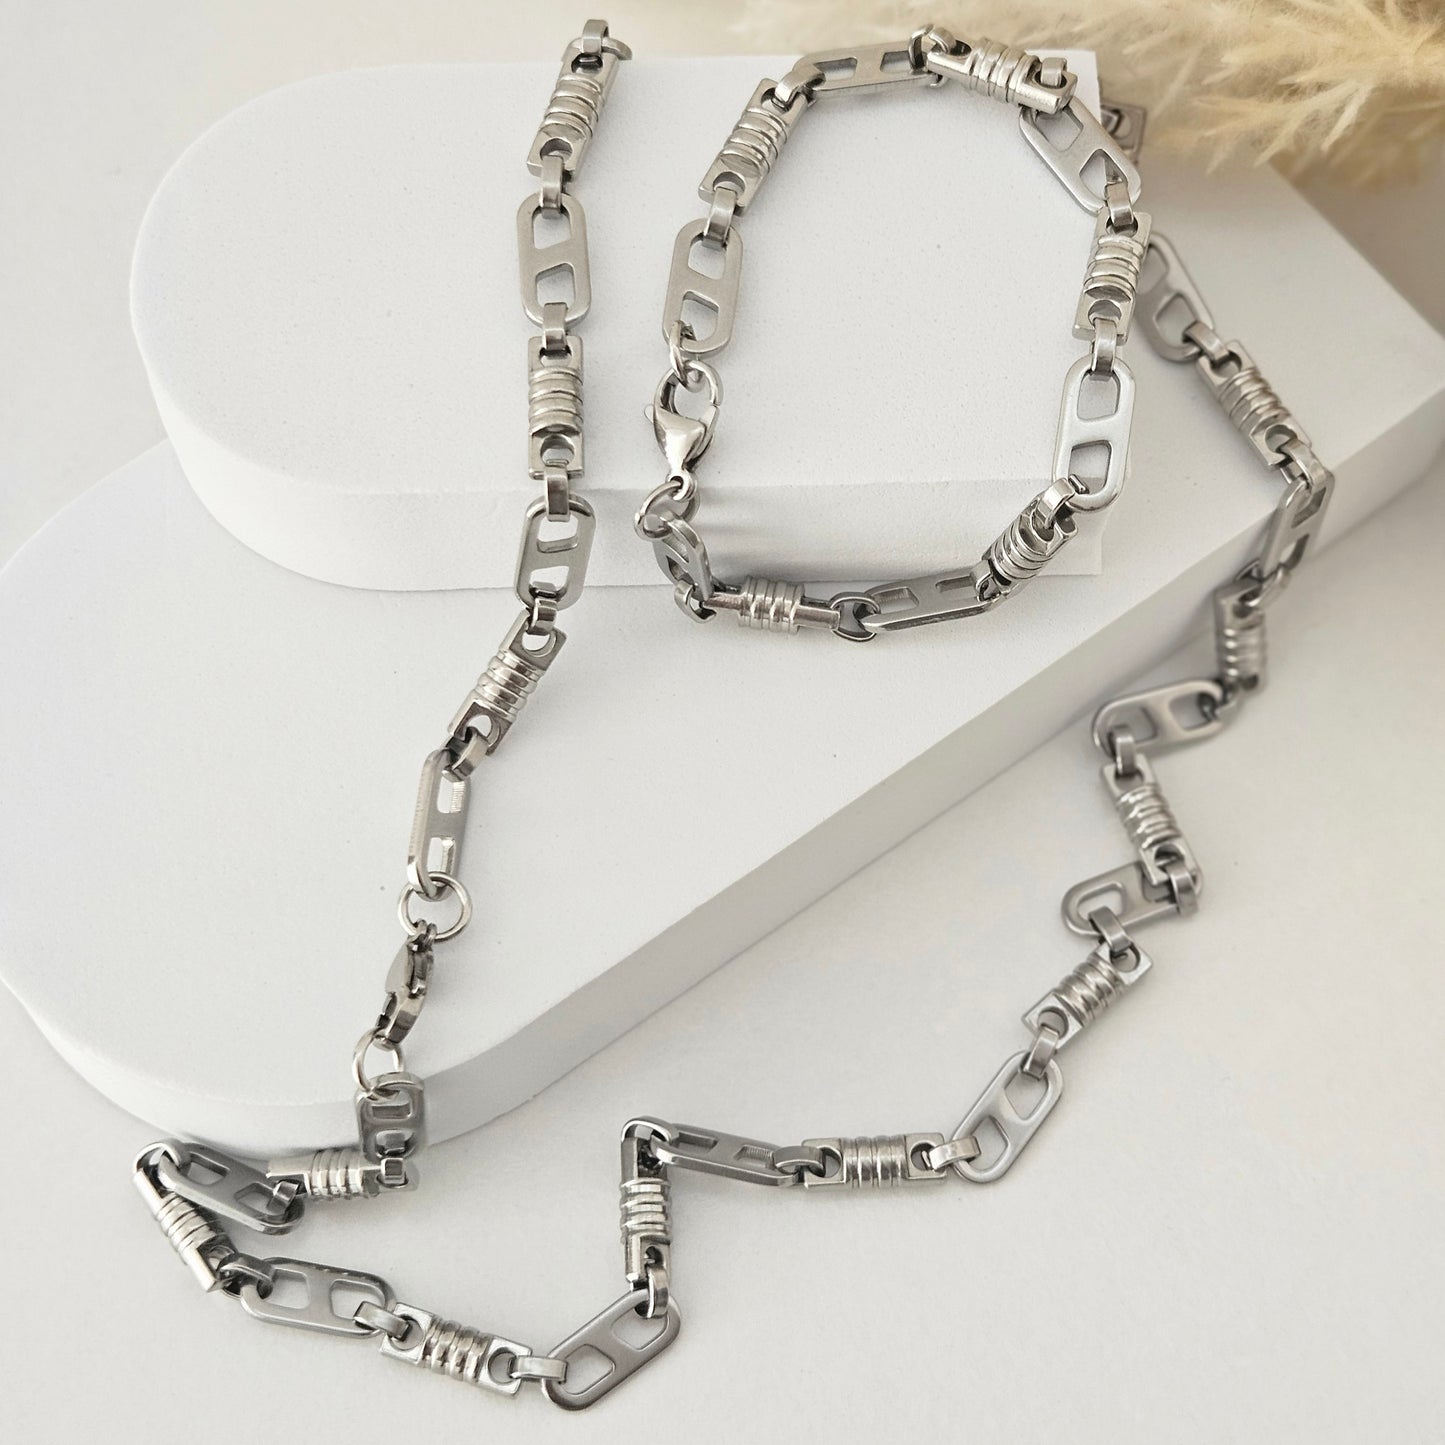 Jose Set Bracelet & Necklace